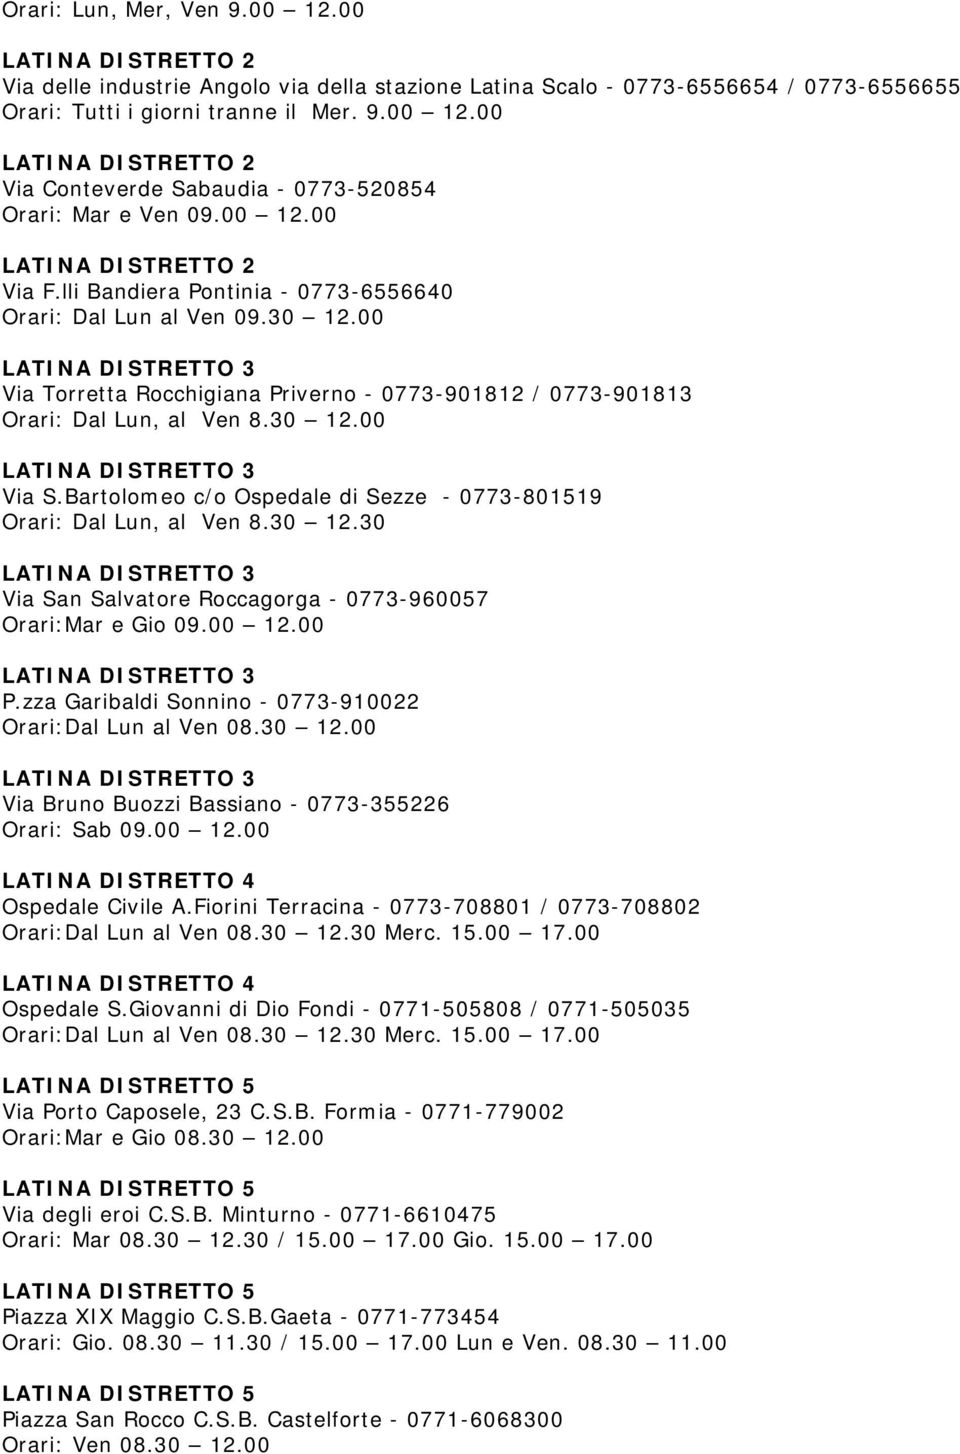 Bartolomeo c/o Ospedale di Sezze - 0773-801519 Orari: Dal Lun, al Ven 8.30 12.30 Via San Salvatore Roccagorga - 0773-960057 Orari:Mar e Gio 09.00 12.00 P.